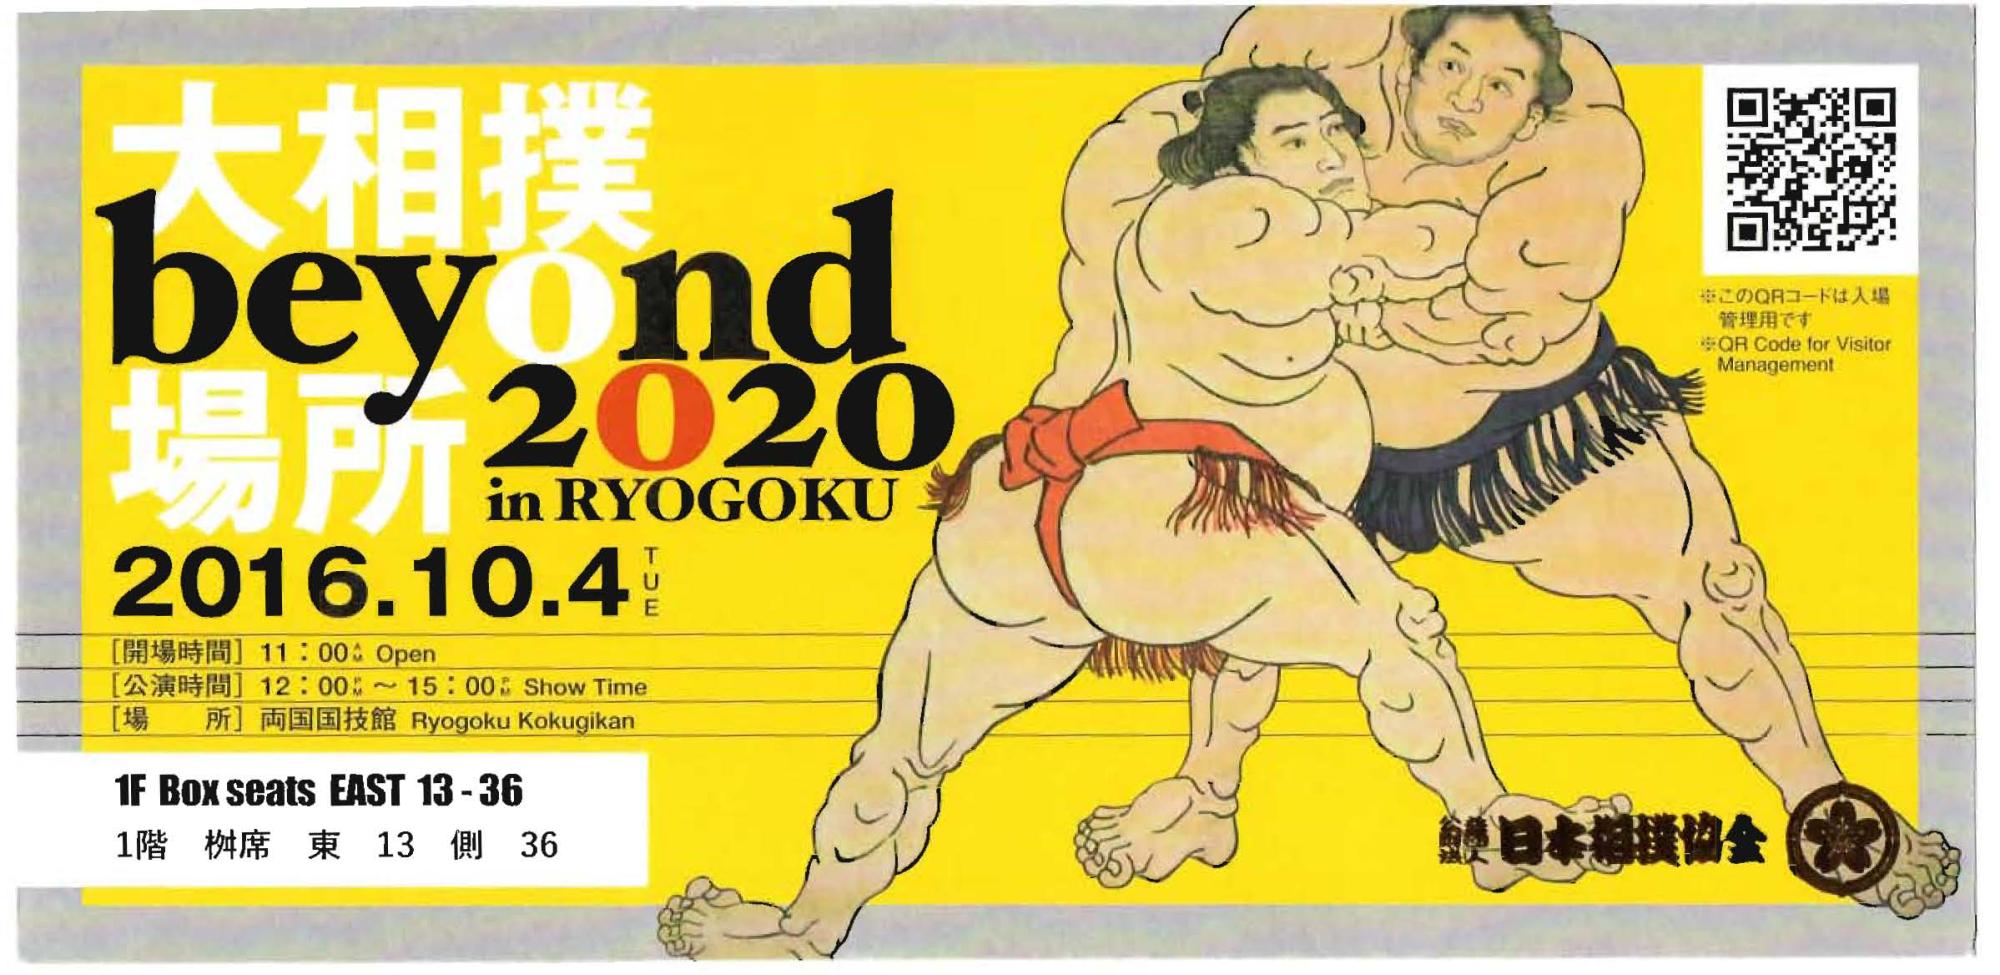 United School of Tokyo (2015-2017) - Sumo Wrestling Ticket Beyond2020 Tokyo